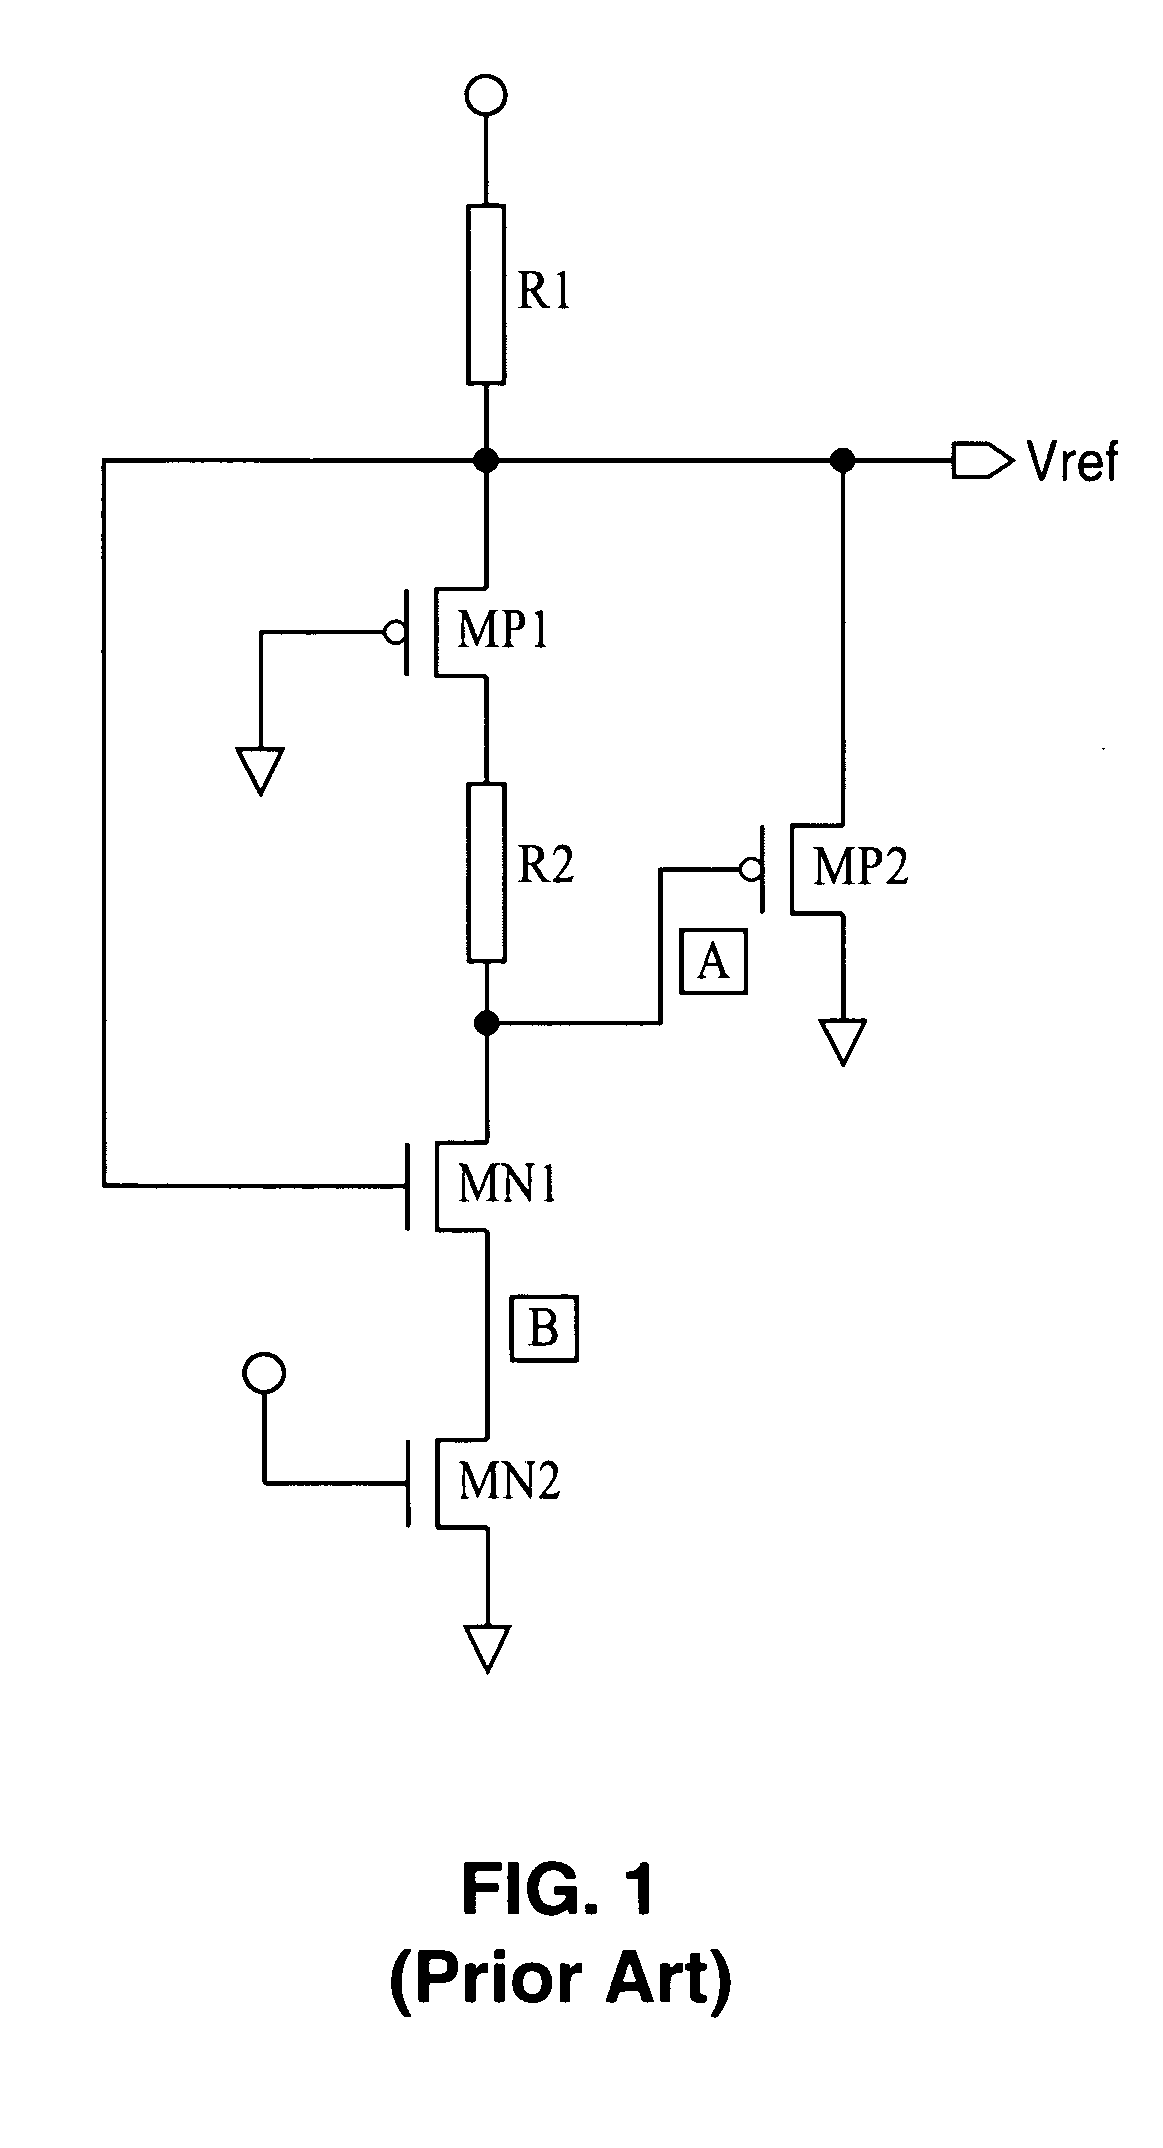 CMOS constant voltage generator